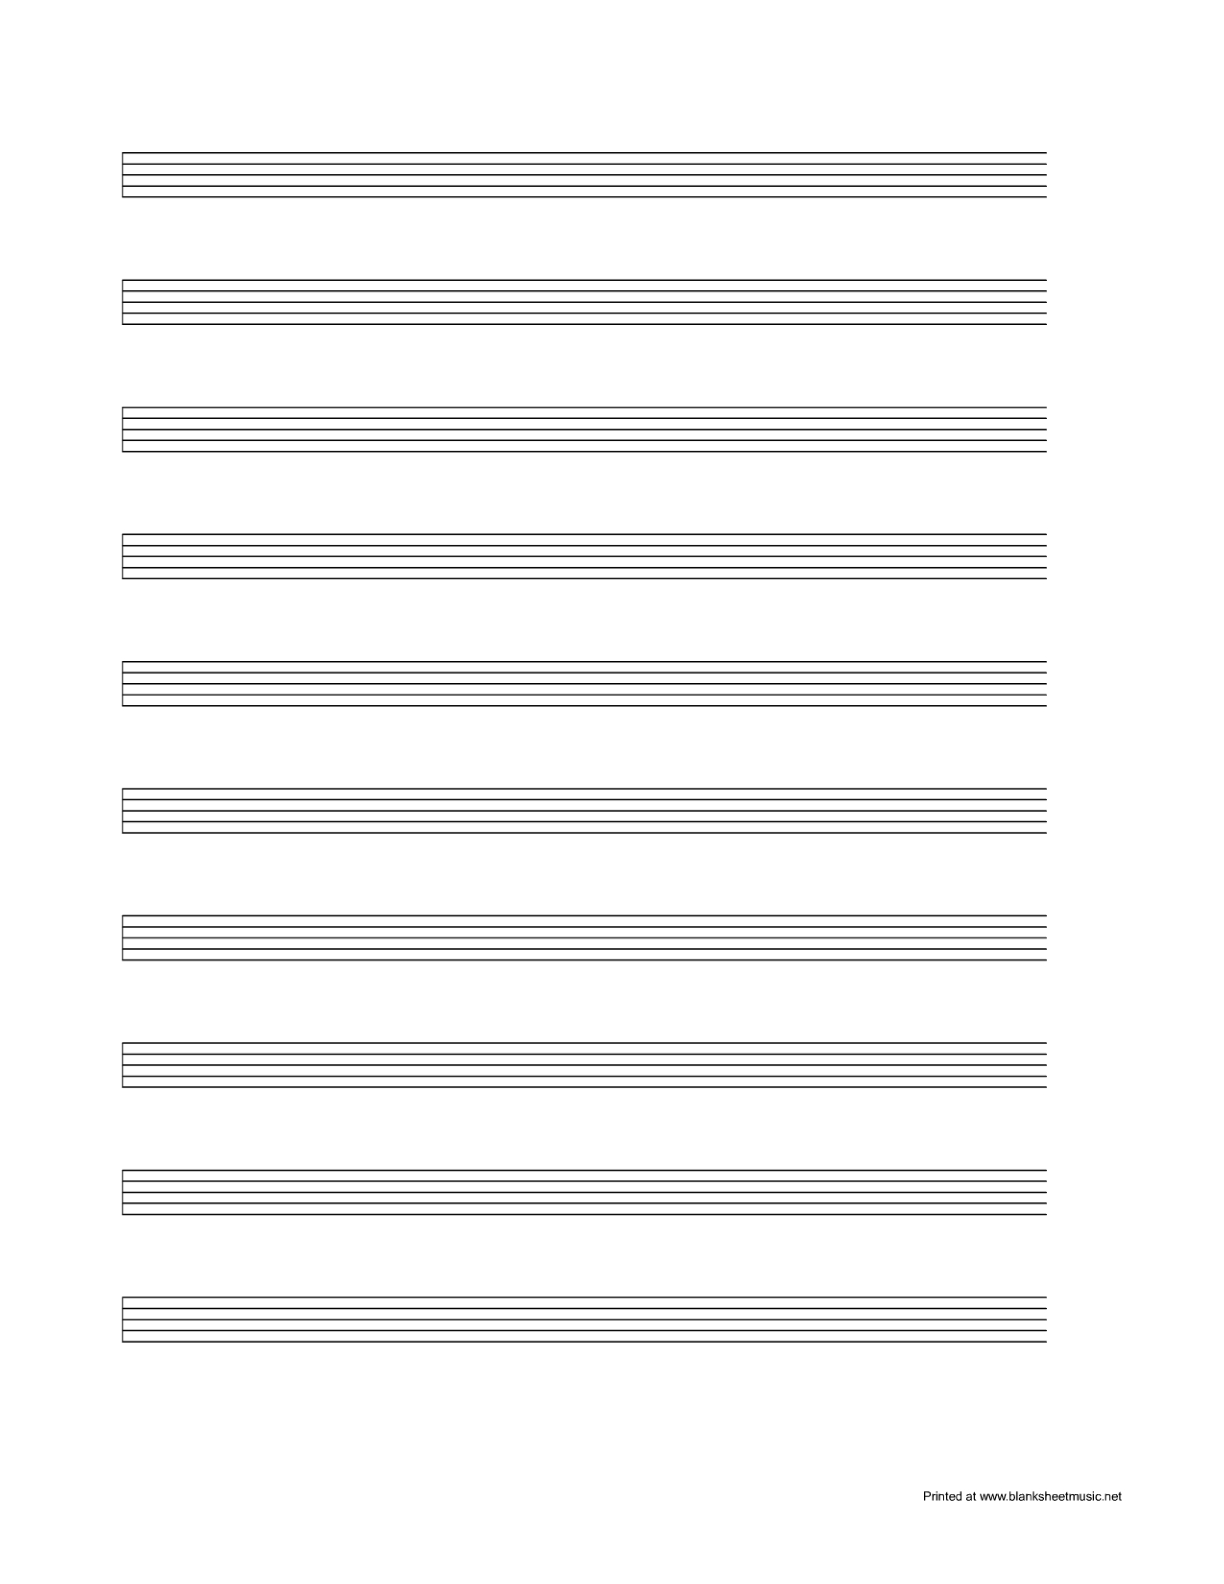 Blank sheet music clipart